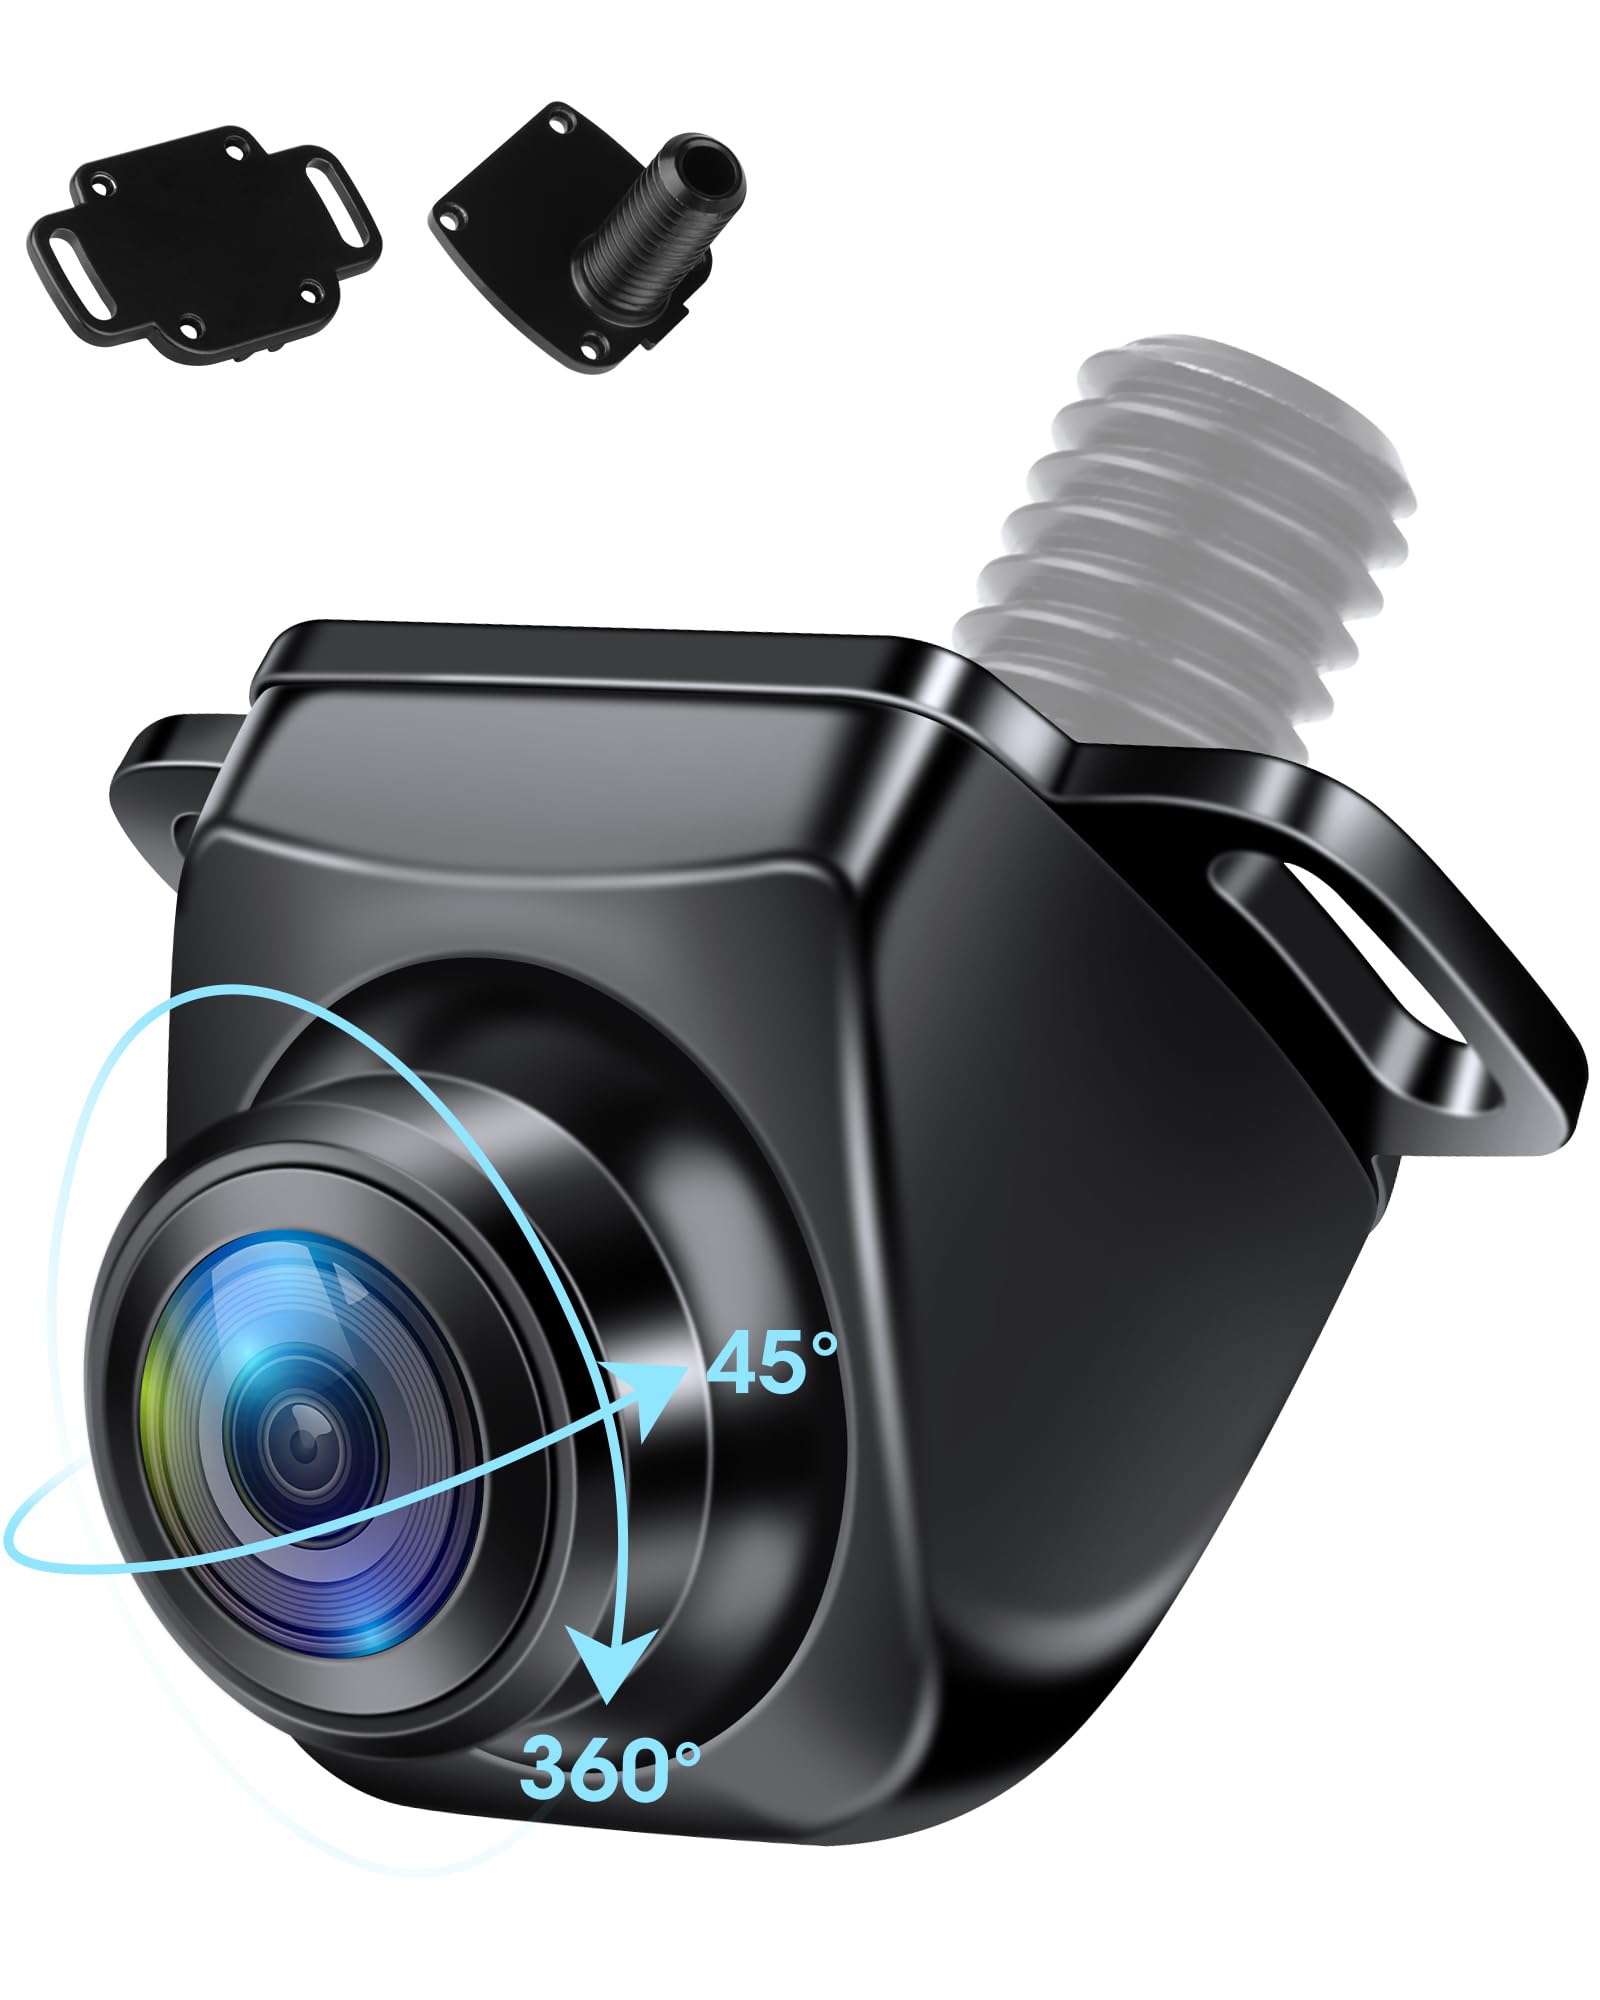 商品情報商品の説明主な仕様 【業界をリードする革新的設計】jelkuzが自信を持ってお届けする業界唯一の角度調整可能なAHD 720Pバックカメラ付き交換式カメラバックカバーです。?この車載カメラは上下、左右360°+45°の回転角度を実現することができ、従来の面倒なステップのレンズ角度を調整するためのシムを直接スキップし、スパナだけで簡単にレンズの撮影方向を調整することができます。リアカメラをインストールした後、リアカメラ撮影の角度が適していないため、2回目のためにそれを分解してインストールする必要はありませんし、使用するフロントカメラ/リアカメラ/サイドカメラとして使用することができます。?【カメラリアカバー交換可能】車載用バックカメラは穴あけと非穴あけの2通りの設置方法を選択することができ、より設置のニーズに適応し、車の柔軟な設置の選択に応じて設置することができます。br【AHD 720P画質 超暗視機能】? バックカメラは、高感度CCDセンサーを搭載し、5ガラスSTARVISレンズと1層のフィルターガラスで構成され、迷走波干渉を防ぎ、光を収縮させてより多くの光を取り込む、影、グレア、グレア反射のために車載カメラを回避し、画像を暗くしたり、破壊する。高感度・高透過率を確保し、鮮明な画像を出力。? フロントカメラ 3Dノイズリダクション技術と高精細ガラスレンズの暗黙の協力により、、画像ノイズを低減し、画像の鮮明度を向上させることができます。 同時に、バックカメラは強力な画像処理能力を持ち、0.1luxの最低照度、画像表示が遅れない、低消費電力、日中、夜間、トンネル、低照度環境にかかわらず、リアカメラは、画像の鮮明で詳細な画像を与えることができ、常にあなたの安全を守ることができます。br【3つのコントロールモード 170度の超広角】? 従来のバックカメラシングルAHDまたはCVBS信号出力の制限を打破し、リアカメラCVBS/AHD、鏡像/正像、反転ライン表示/非表示、3つの制御モードの切り替えは、互換性の問題を完全に解決し、より広い選択性は、より多くのシーンに適用することができます。複雑な設定は必要なく、対応するケーブルを切るだけで簡単に対応するモードを切り替えることができる。? 車載カメラ完璧な170°最適な広角、反転の死角を排除し、画像が歪んでいない、初心者でも簡単に距離を測定し、安全な駐車することができ、180°魚眼レンズの画像の歪みや小角レンズの視覚の死角を避けるために、反転の危険性によってもたらされる。br【高品質素材】?バックカメラ は一般的な降圧基板に比べ高コストの非加熱降圧基板を採用し、安定性と耐久性を高め、ちらつき、不安定な電流、短絡などの現象を防止し、高温によるラインの経年劣化を抑え、安全性を確保し、内部部品や配線を保護し、リアカメラの寿命を延ばします。? 車載カメラ 通常のアルミ線を使用すると、抵抗が高くなり、信号が減衰しやすく、鮮明度が480Pの解像度に制限されます。 そのため、Jelkuz 車載用バックカメラは純銅コアケーブルの二重信号シールド設計を採用し、インピーダンスを大幅に低減することで、映像がより鮮明になり、干渉がなく、超長距離のAHD 720P映像信号の確実な伝送を実現します。br【堅牢な金属筐体＆IP69K防水】2023 Jelkuzはバックカメラのレビュー分析に基づき、車載用バックカメラの80％が動作しなくなるのは、プラスチック筐体が季節によって伸縮し、経年劣化や水の浸入につながるためであることを発見しました。 この問題を避けるために、弊社のリアカメラ本体は頑丈な合金シェルを採用し、ナノ防水接着剤と組み合わせて、内部部品が外界から隔離されるようにしました。 防水等級はIP69Kで、レンズへの霧や水の影響を心配することなく、あらゆる天候に簡単に対応できます。 万が一水が浸入した場合、新品のリアカメラを提供します。br【超小型タイプ?幅広い用途?保証】?バックカメラ 約5円のミニタイプ設計で、リアカメラ/フロントカメラ/サイドカメラともども車両にぴったりと溶け込み、美しい装着が可能です。?車載カメラは4Pinインターフェイスを採用し、リアレンズのRCAインターフェイスに比べて落ちにくく、車載用バックカメラの4Pinインターフェイスは信号伝送をより安定させます。 12V-24V車、トラック、SUVなどに適合します。?【注意】ドライブレコーダーには対応していません。標準RCA入力を使用するホストコンピュータまたはLCD / TFTモニタにのみ対応しています。 購入日から12ヶ月保証。取り付けや 使用中に問題が生じた場合は、jenny@jansite.cn までご連絡ください。問題が解決するまでお手伝いいたします。